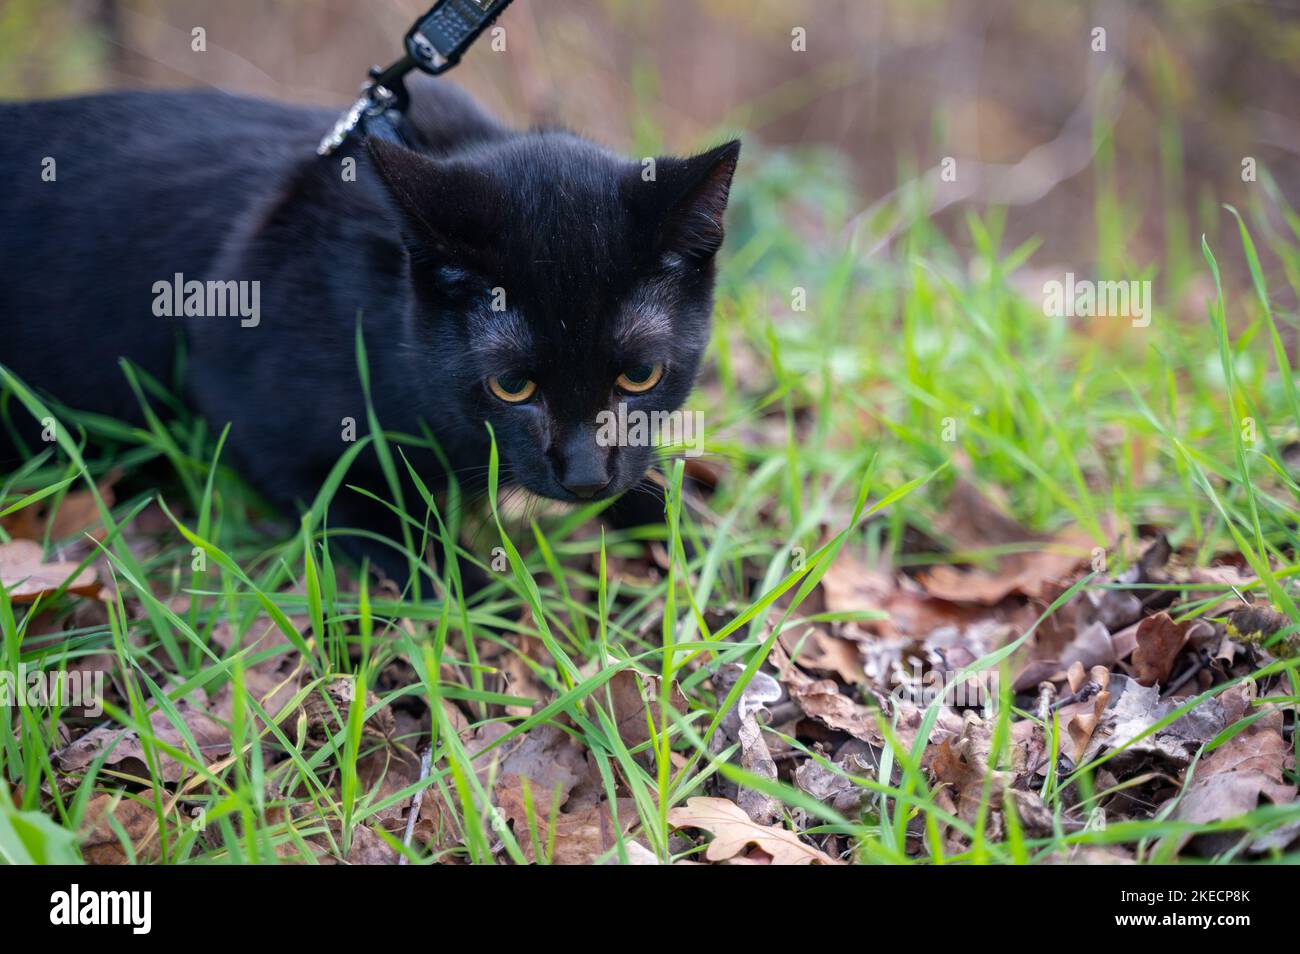 Un chat noir sur une laisse dans la nature à l'automne Banque D'Images